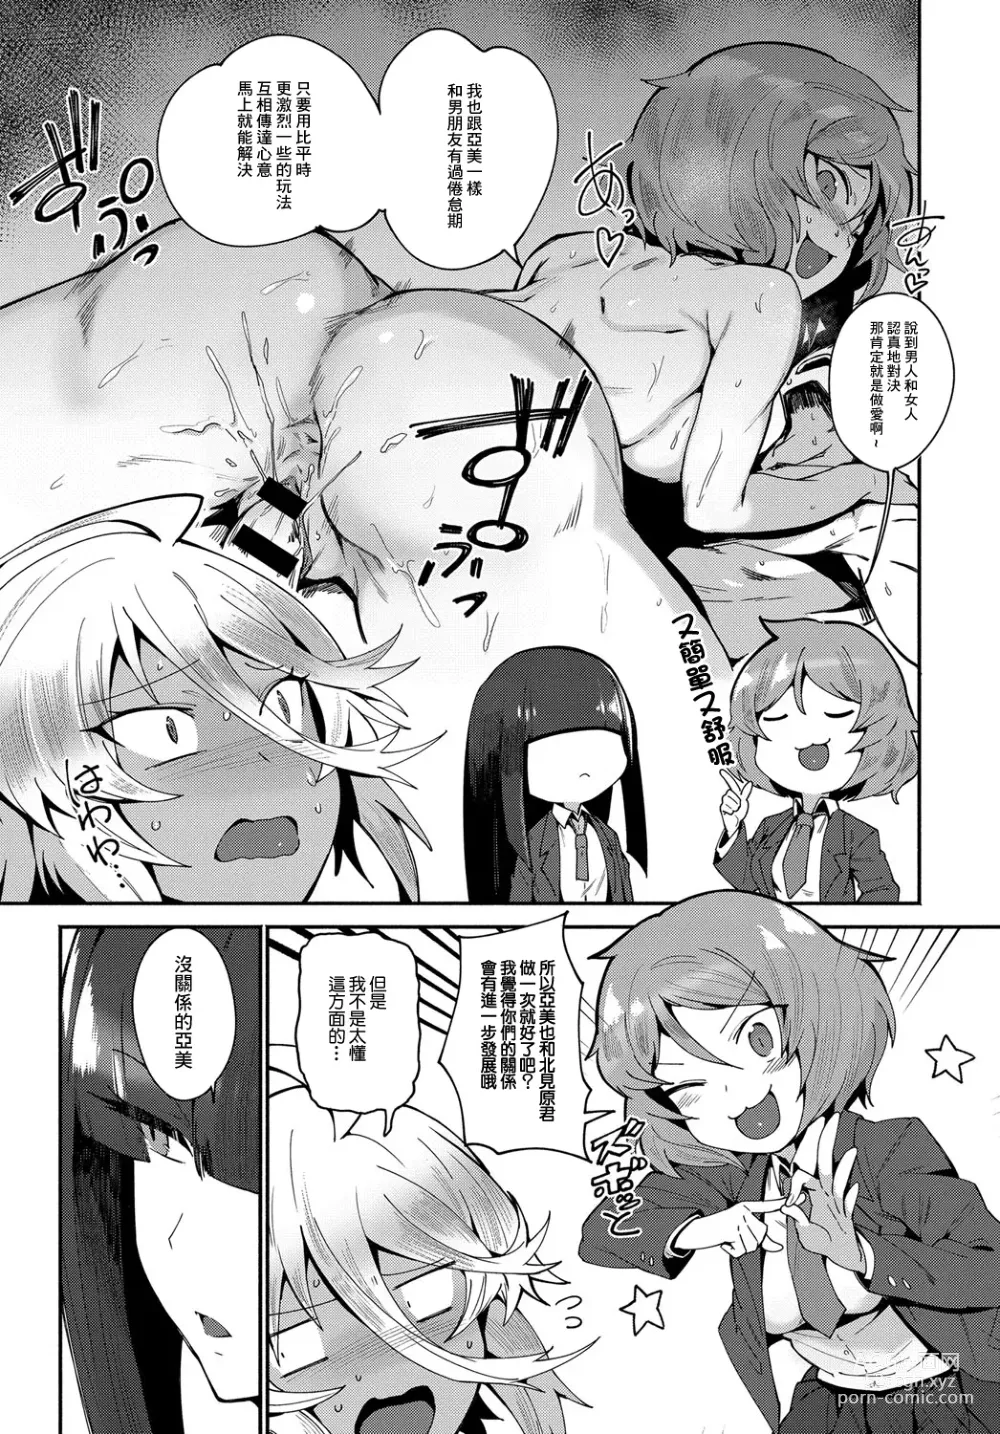 Page 5 of manga AMI FIGHT